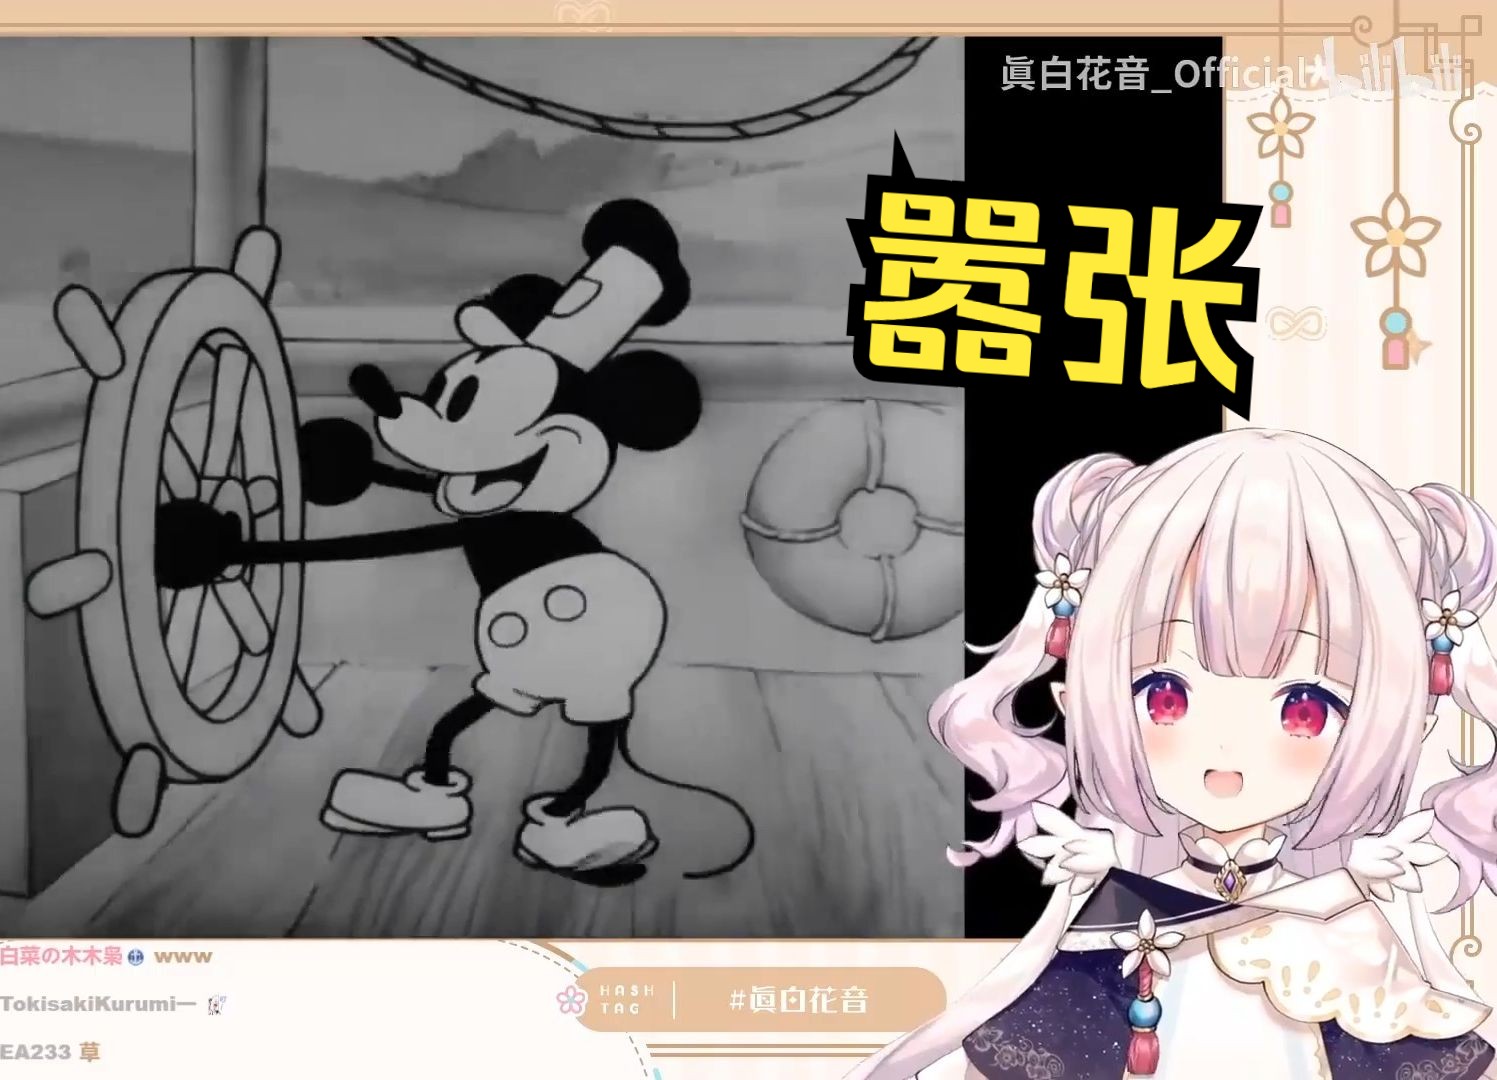 版权一到期就开始看米老鼠的日本萝莉